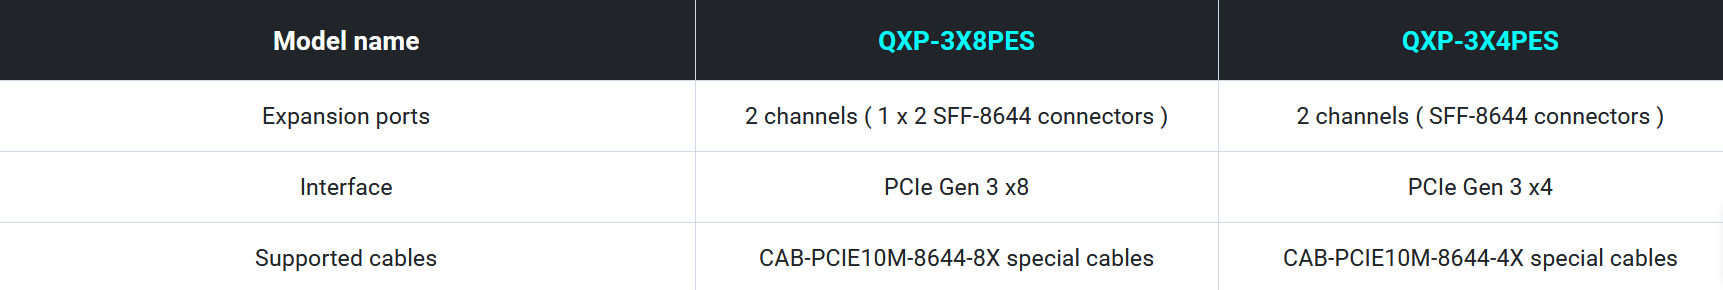 Spesifikasi kartu ekspansi QXP-3XxPES